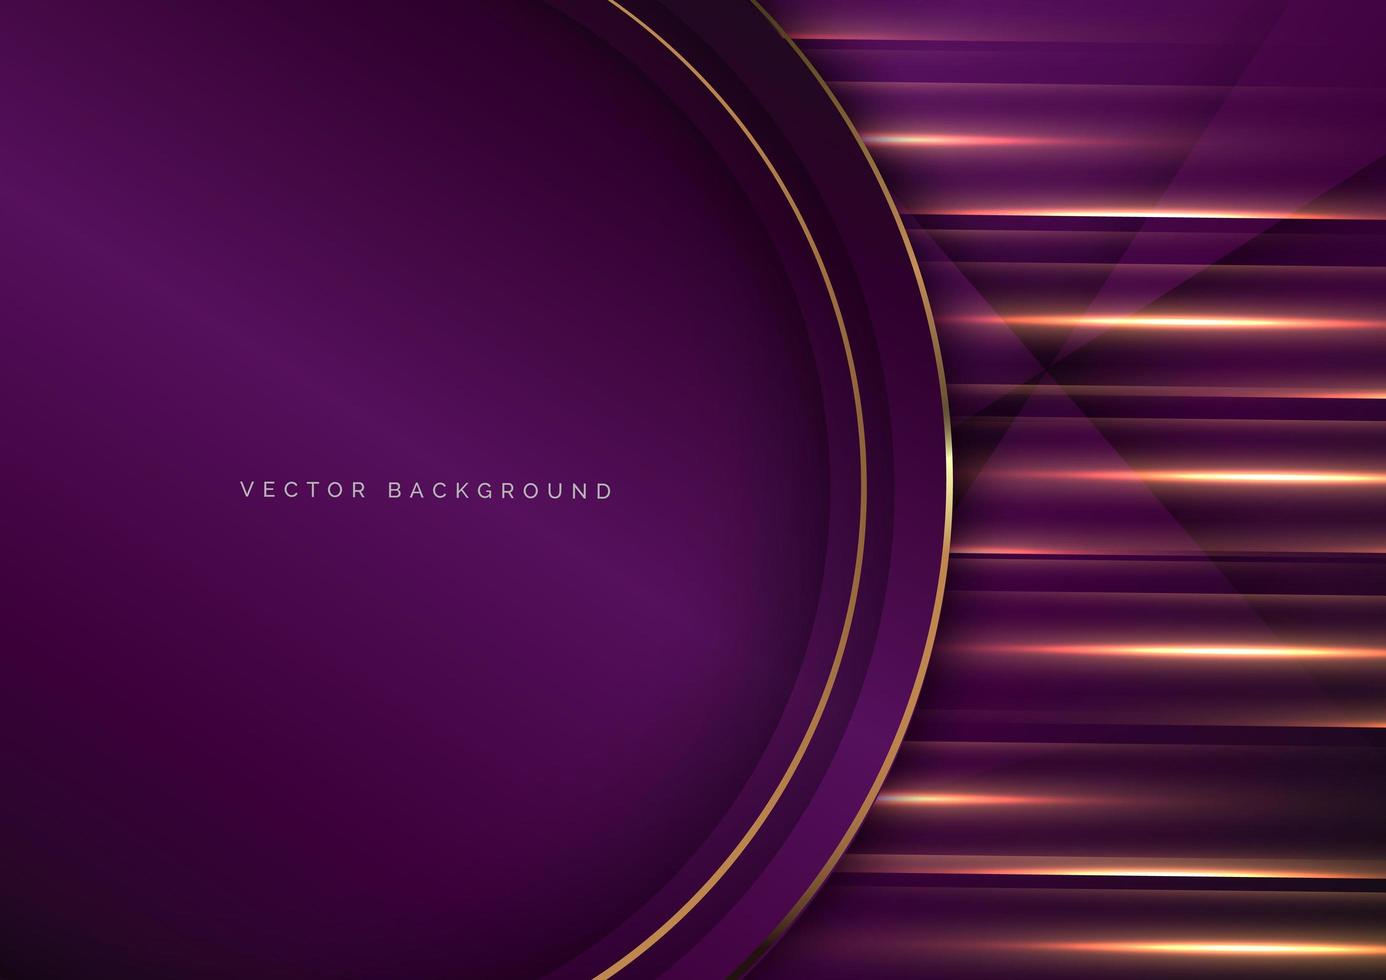 círculos violetas de fronteira de ouro 3d de luxo com efeito de iluminação de brilho no fundo violeta. conceito premium de luxo. vetor